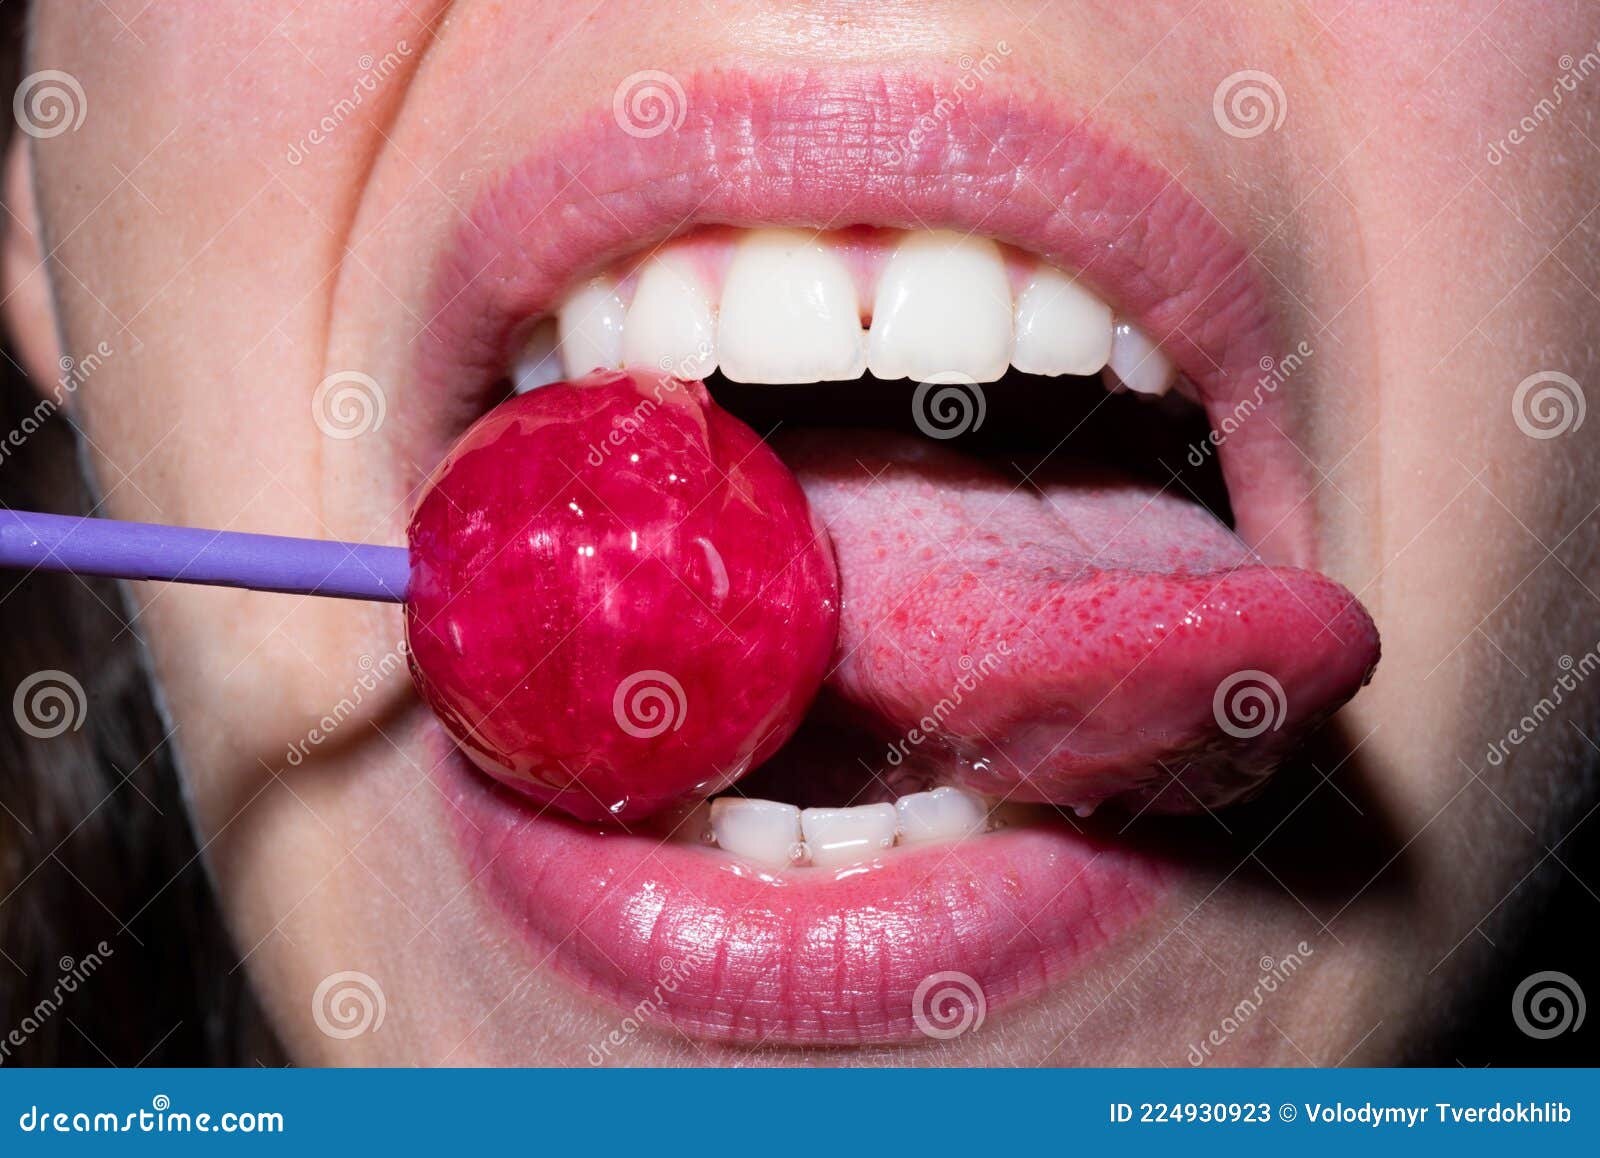 Sucked Tongue